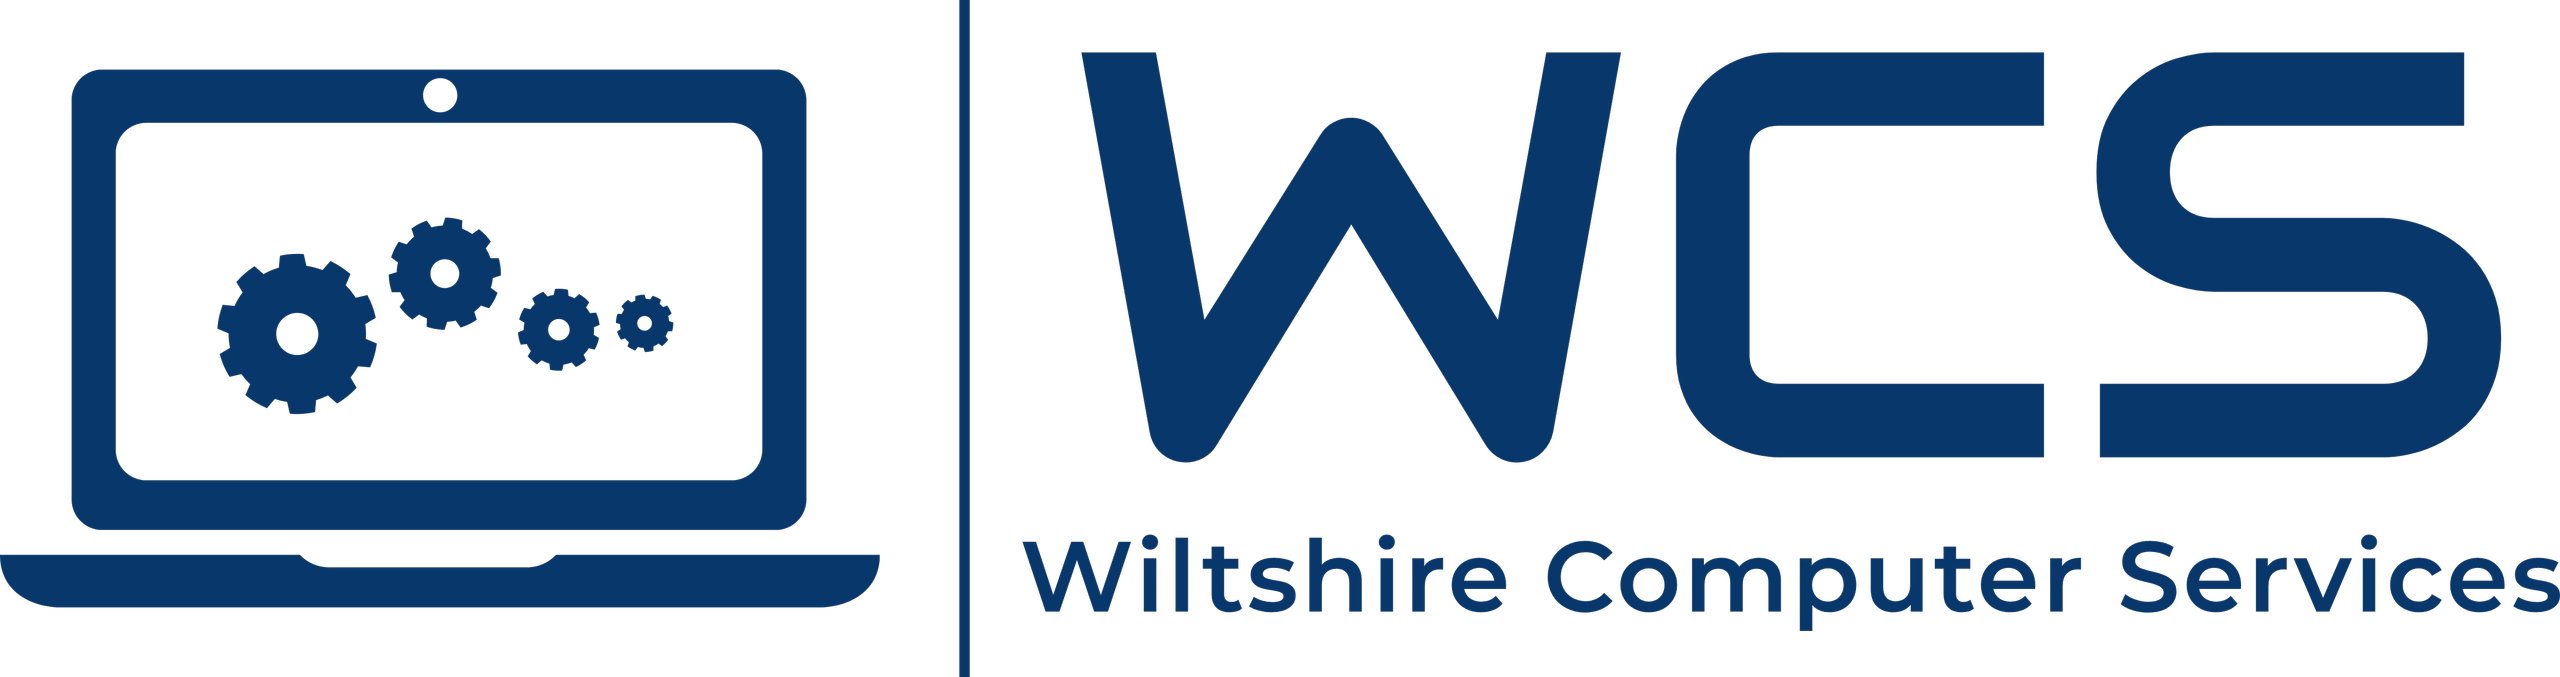 Wiltshire Computer Services